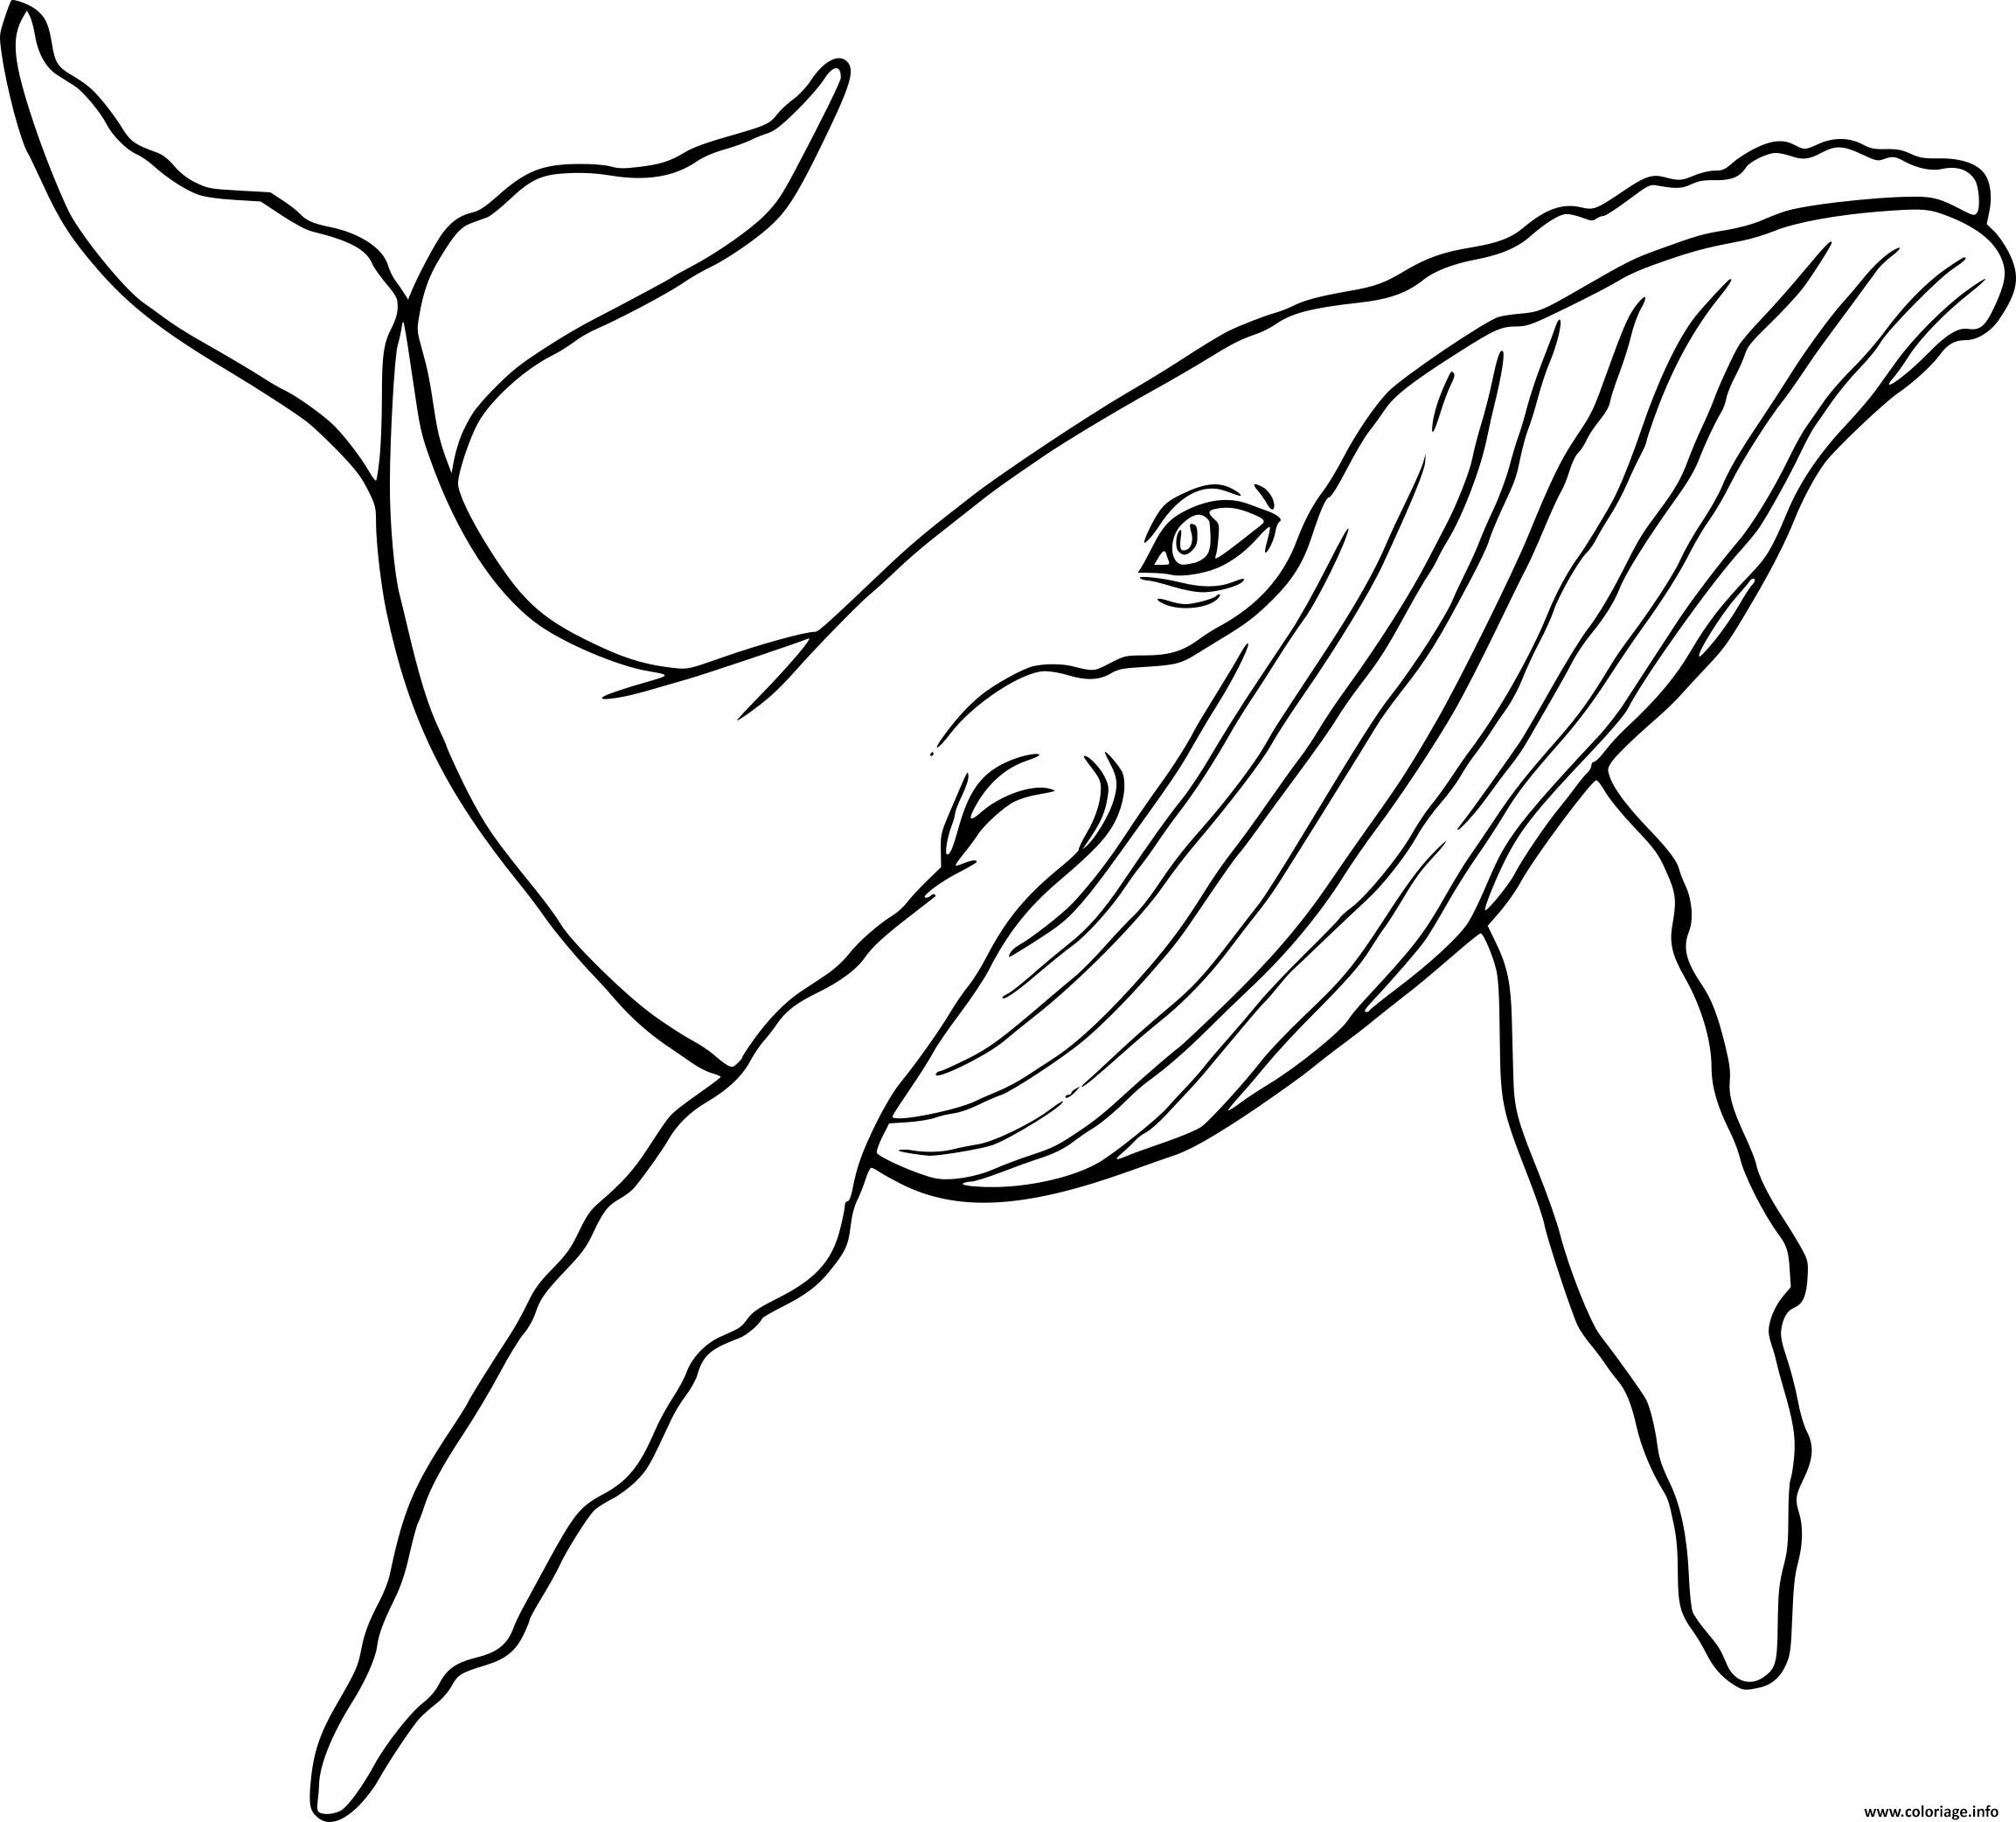 Dessin baleine a bosse Coloriage Gratuit à Imprimer